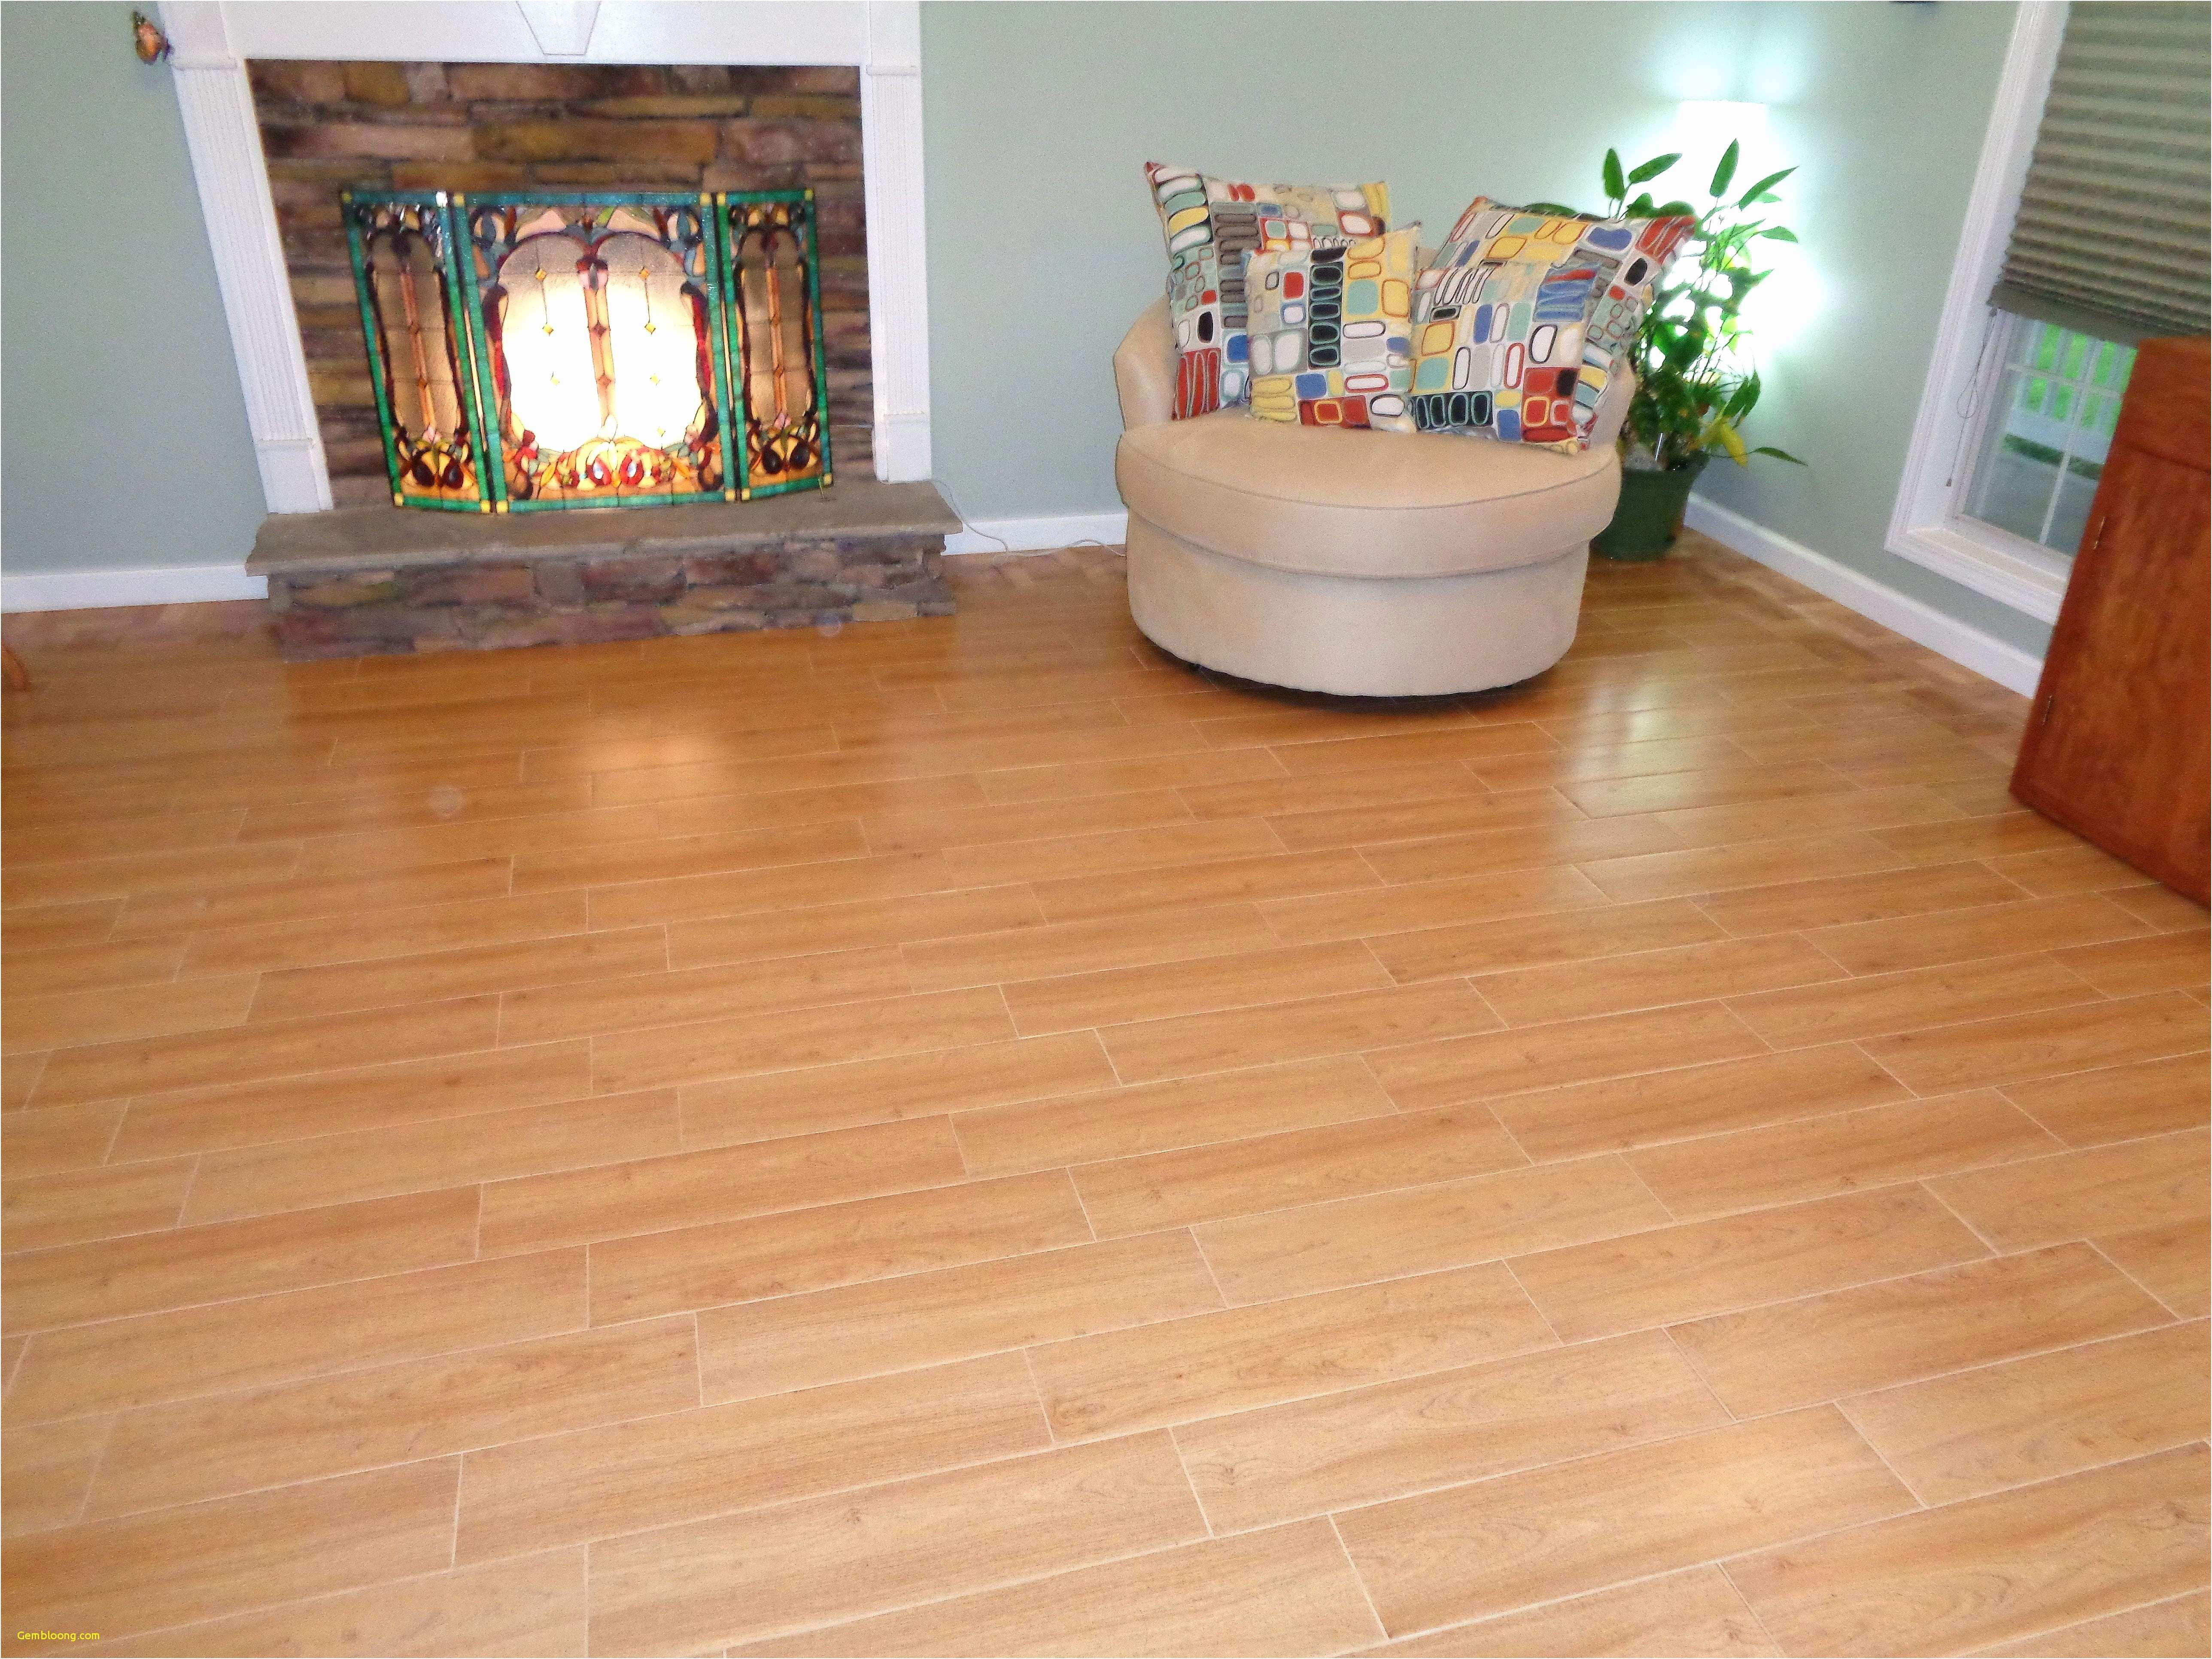 hardwood floors discount prices of wood for floors facesinnature regarding discount laminate flooring laminate wood flooring sale best clearance flooring 0d unique